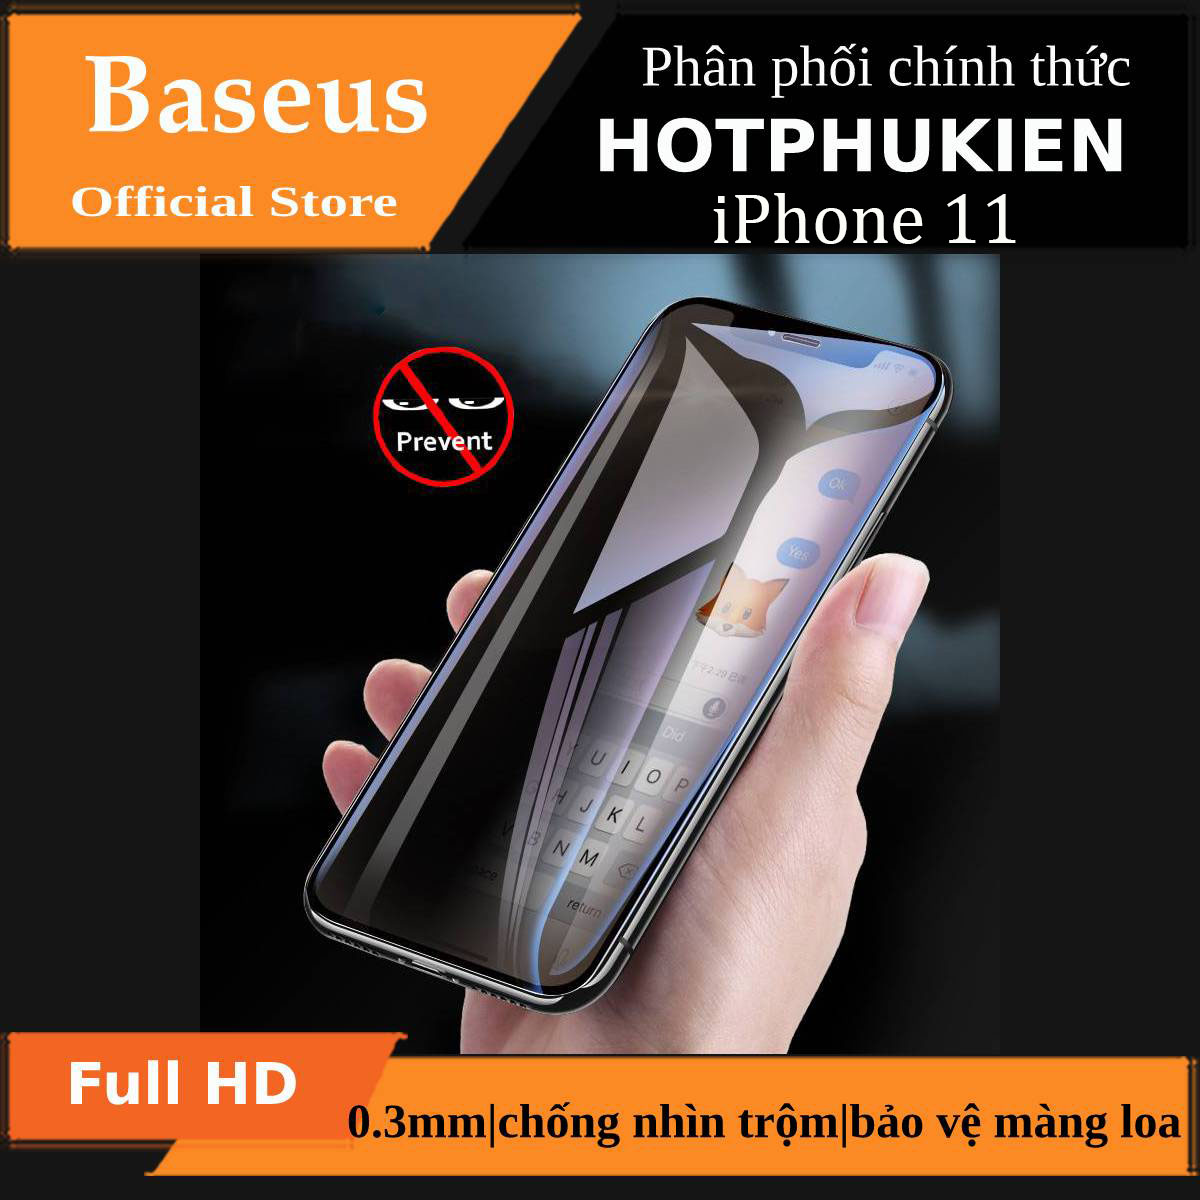 Miếng dán kính cường lực chống nhìn trộm cho iPhone 11 hiệu Baseus